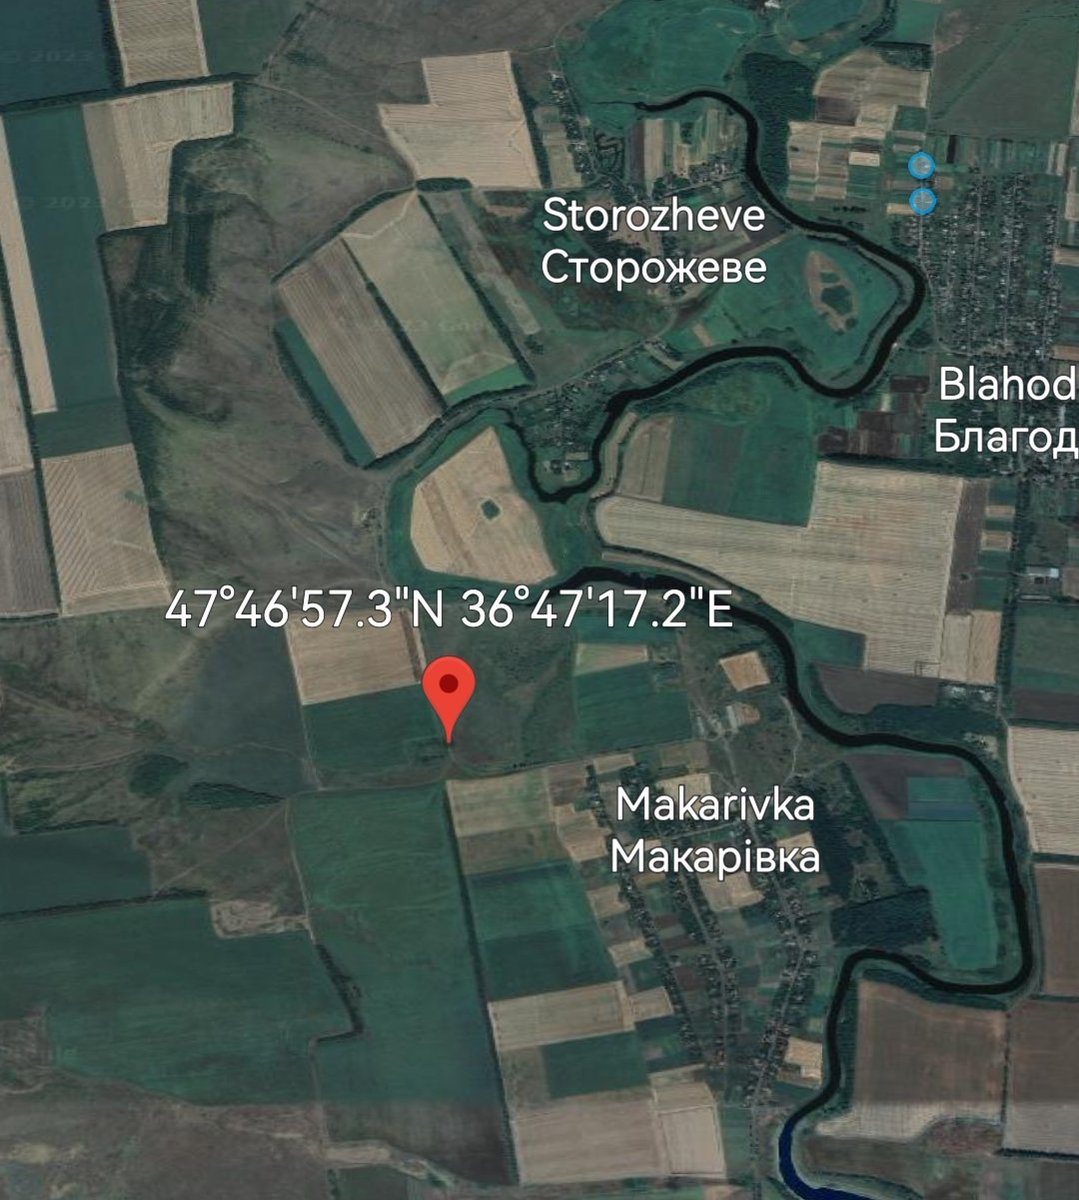 Storozheve ➡️  Makarovka

Coordinates

47.782580, 36.788110